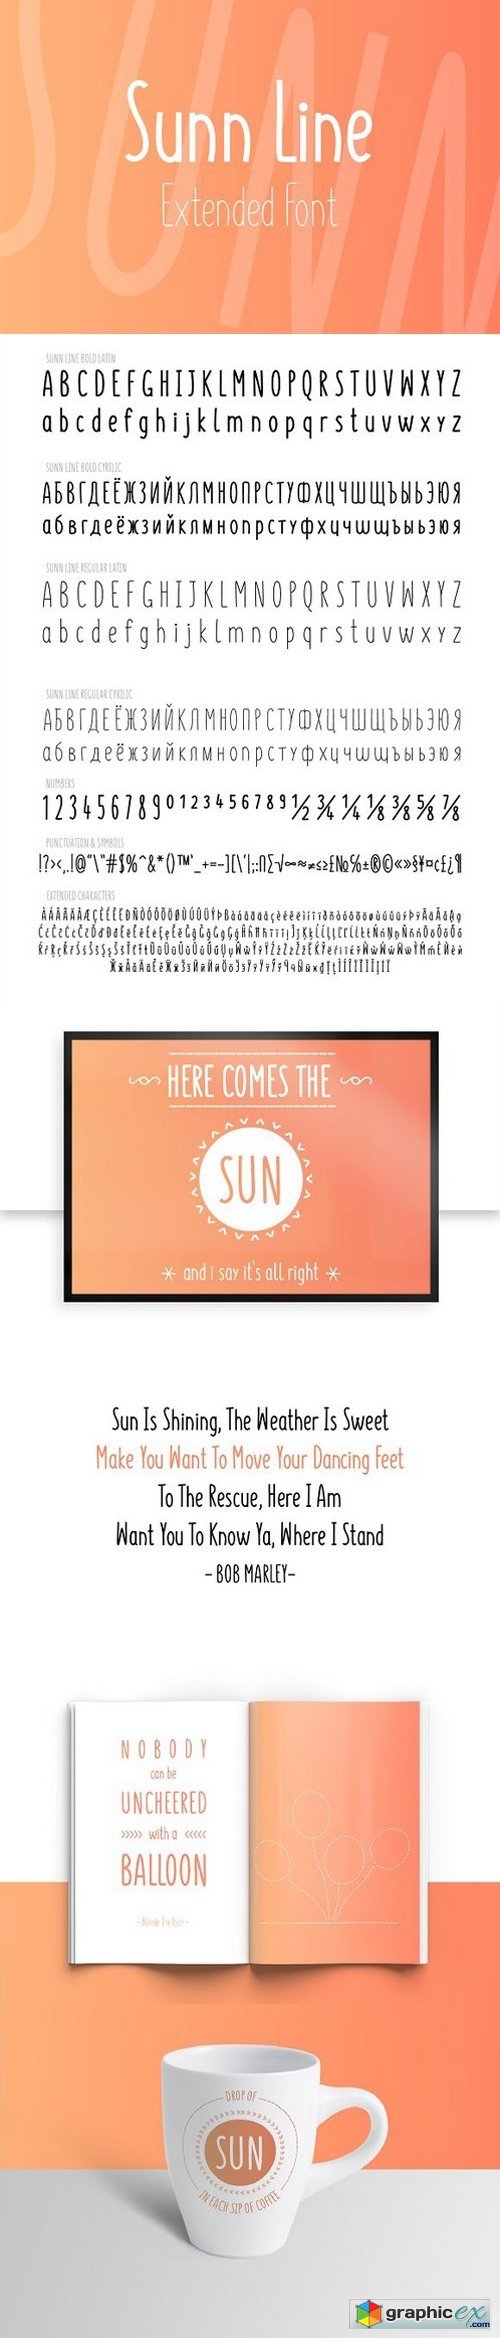 SUNN Line Extended Font